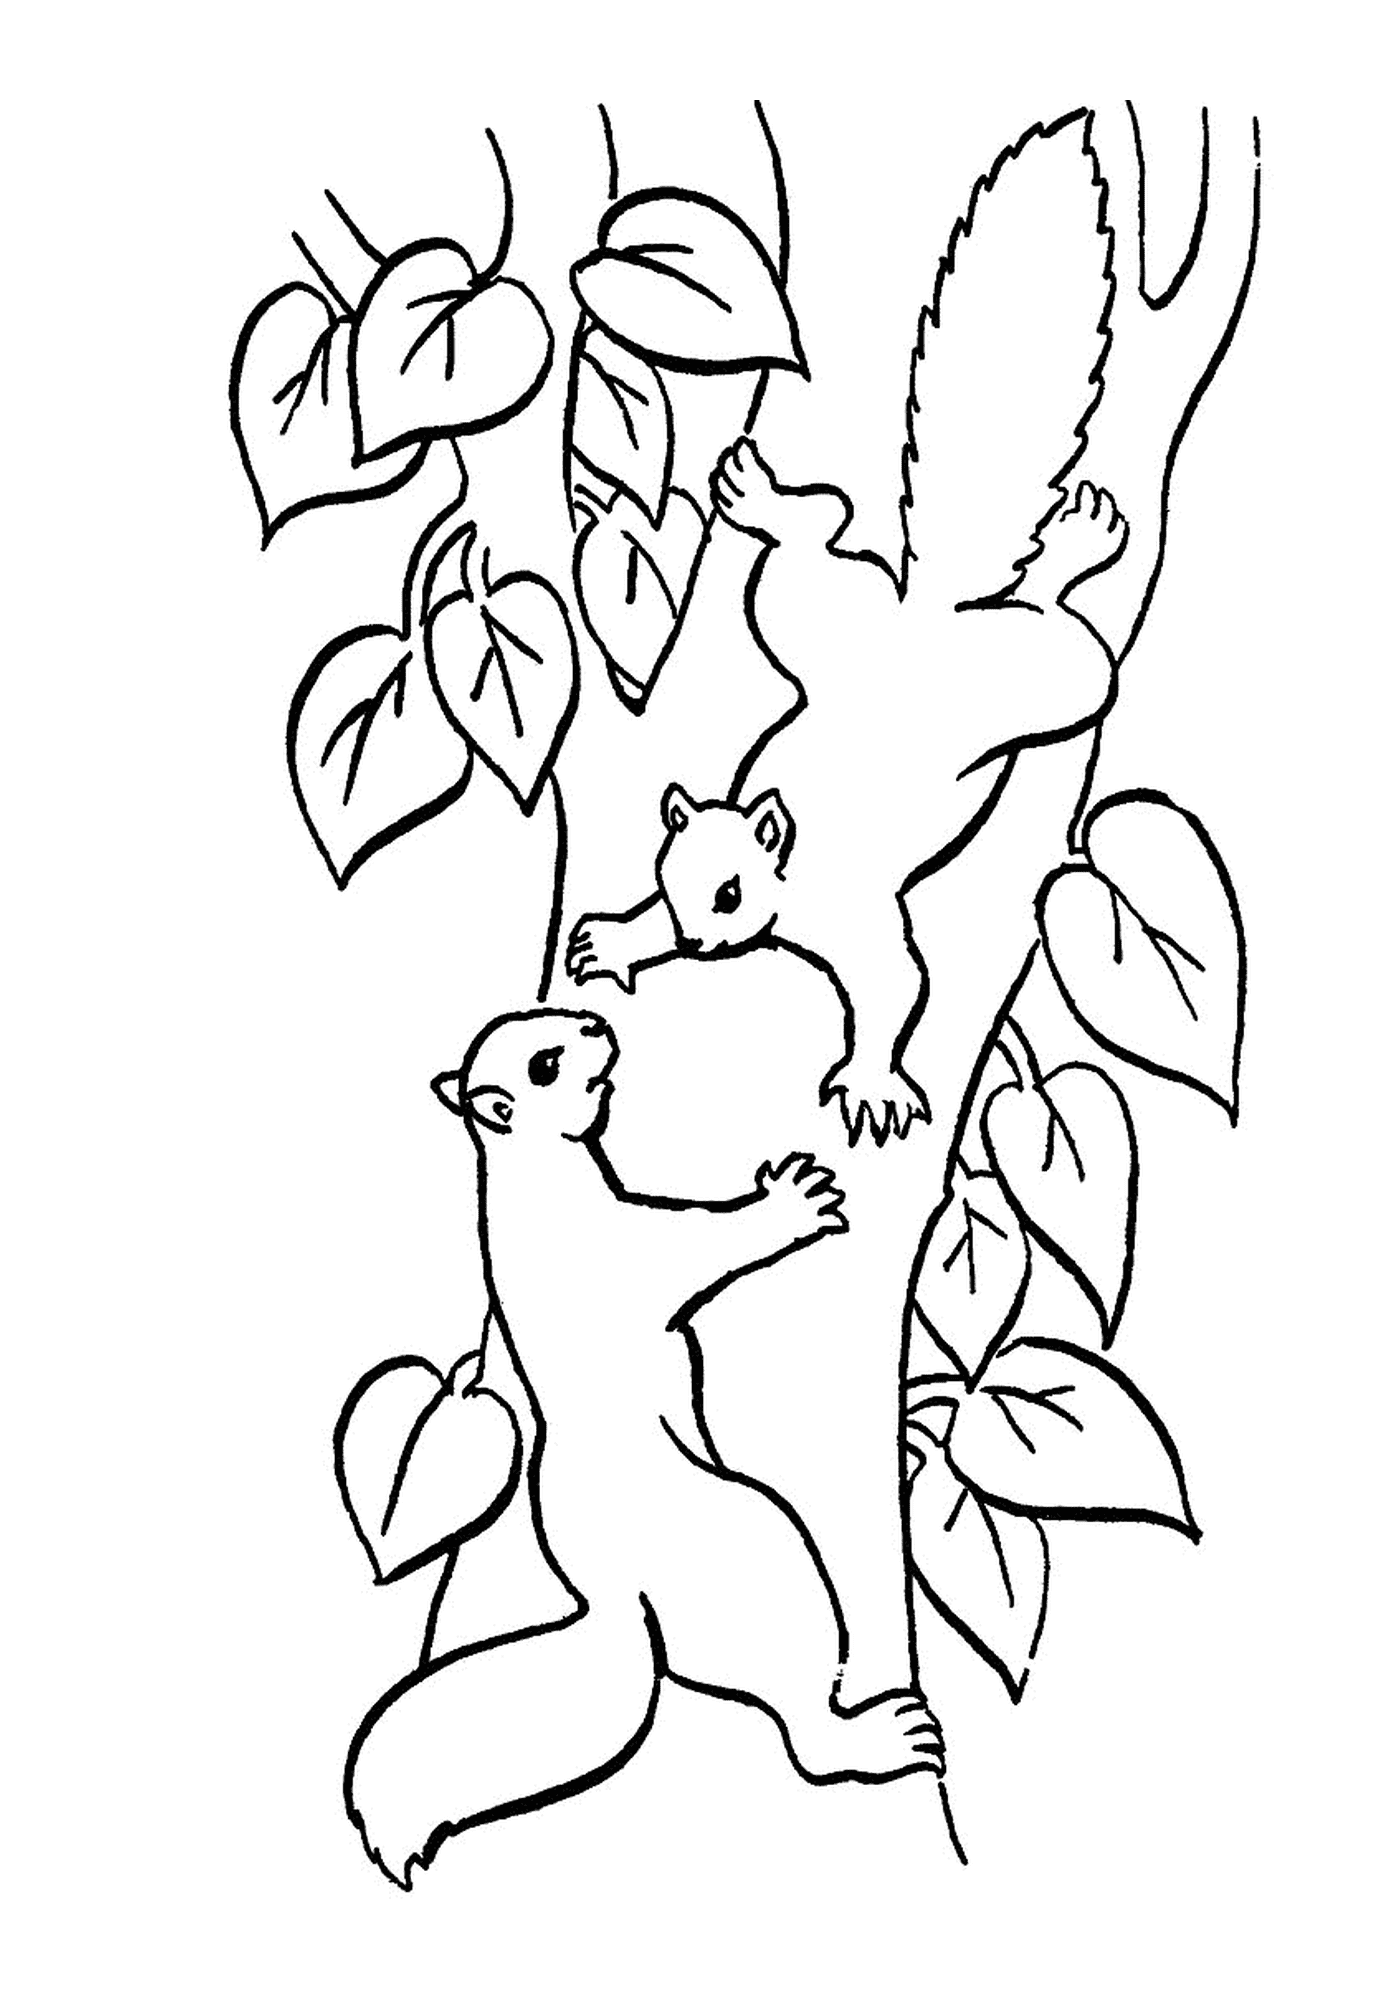  Dois esquilos em um galho de árvore 